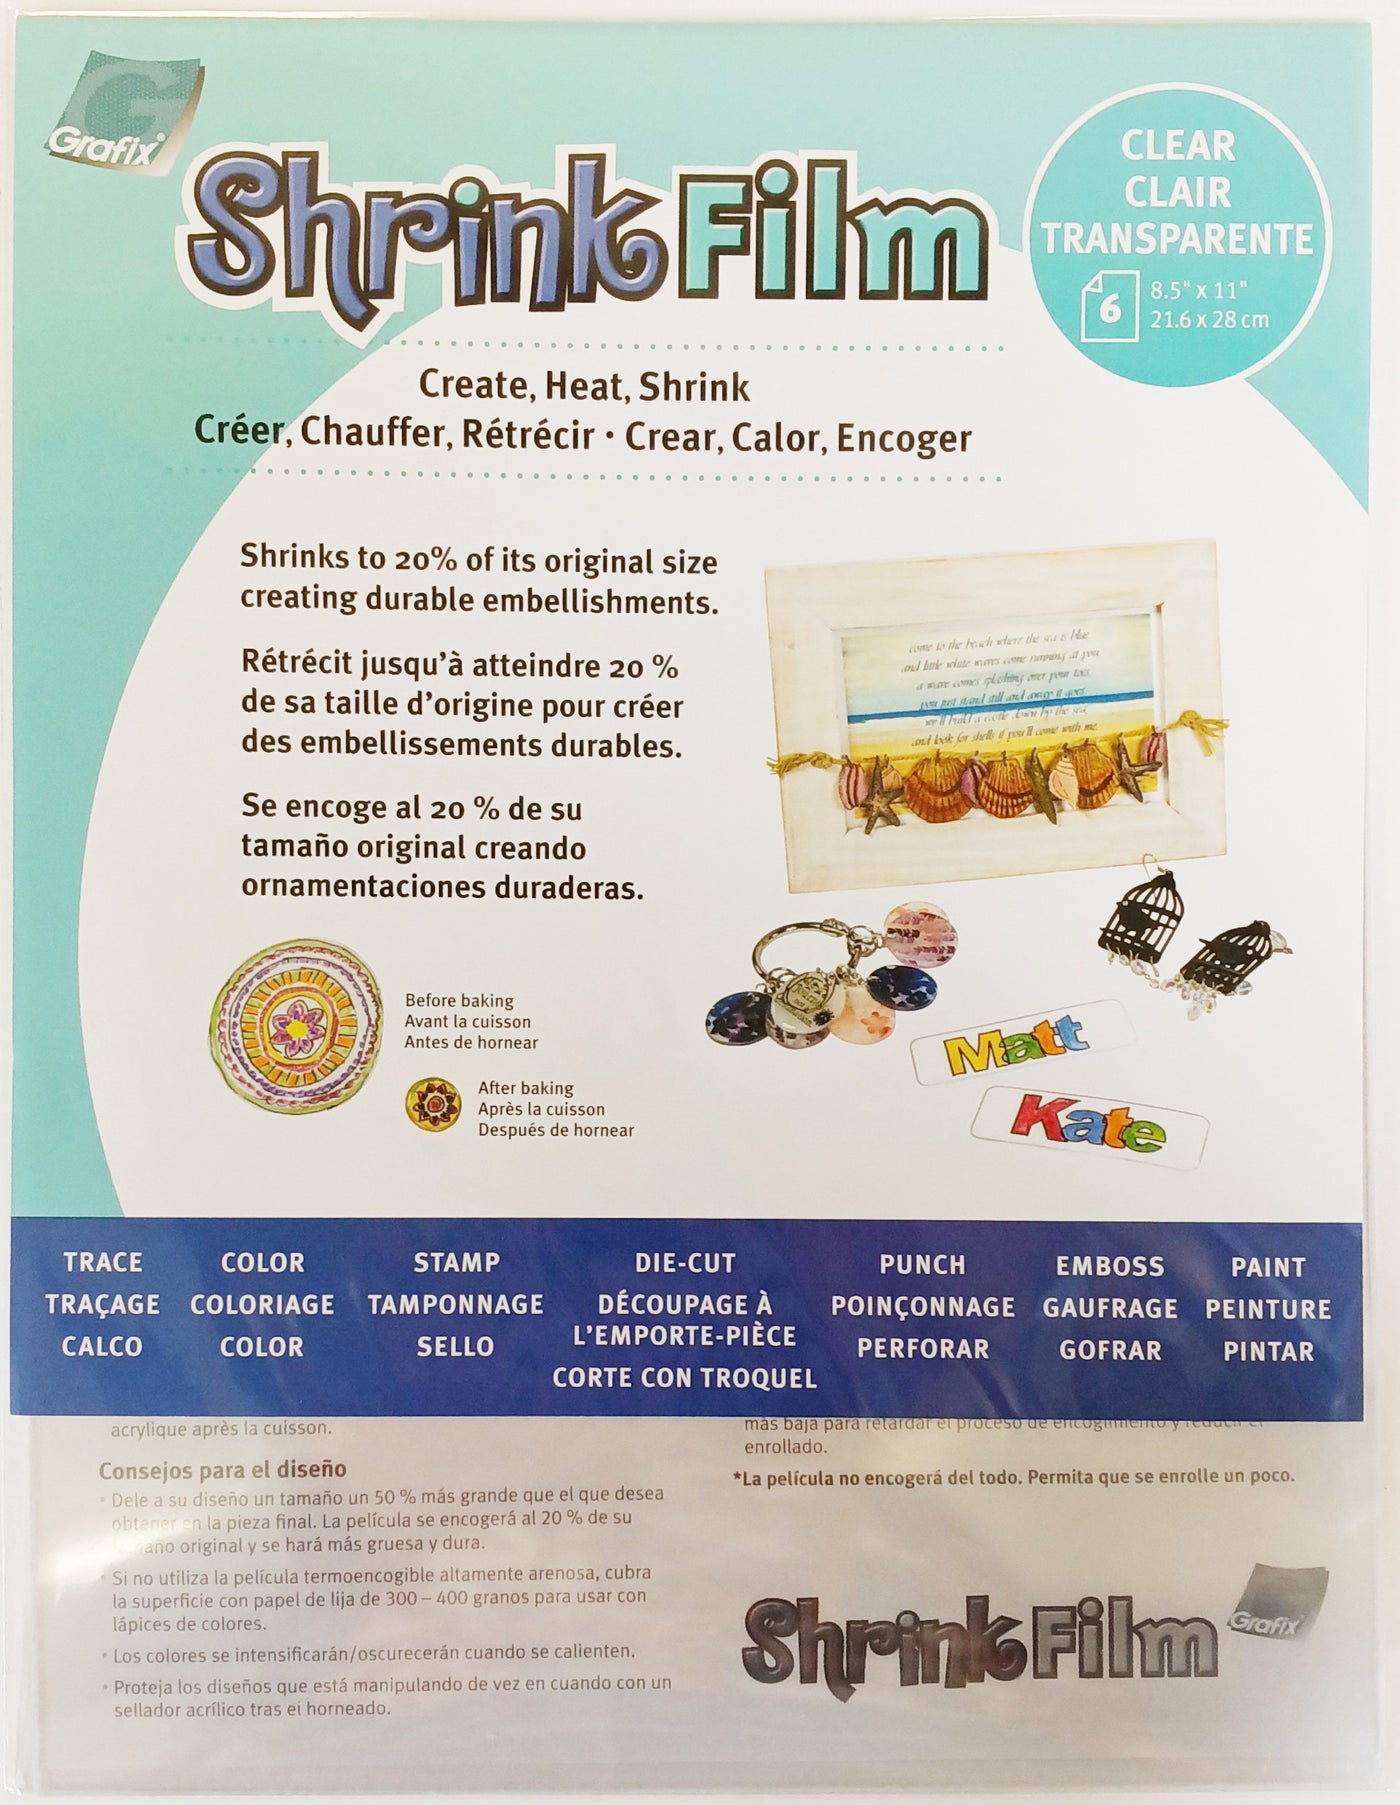 SHRINK FILM  - Nine Different Types - Grafix